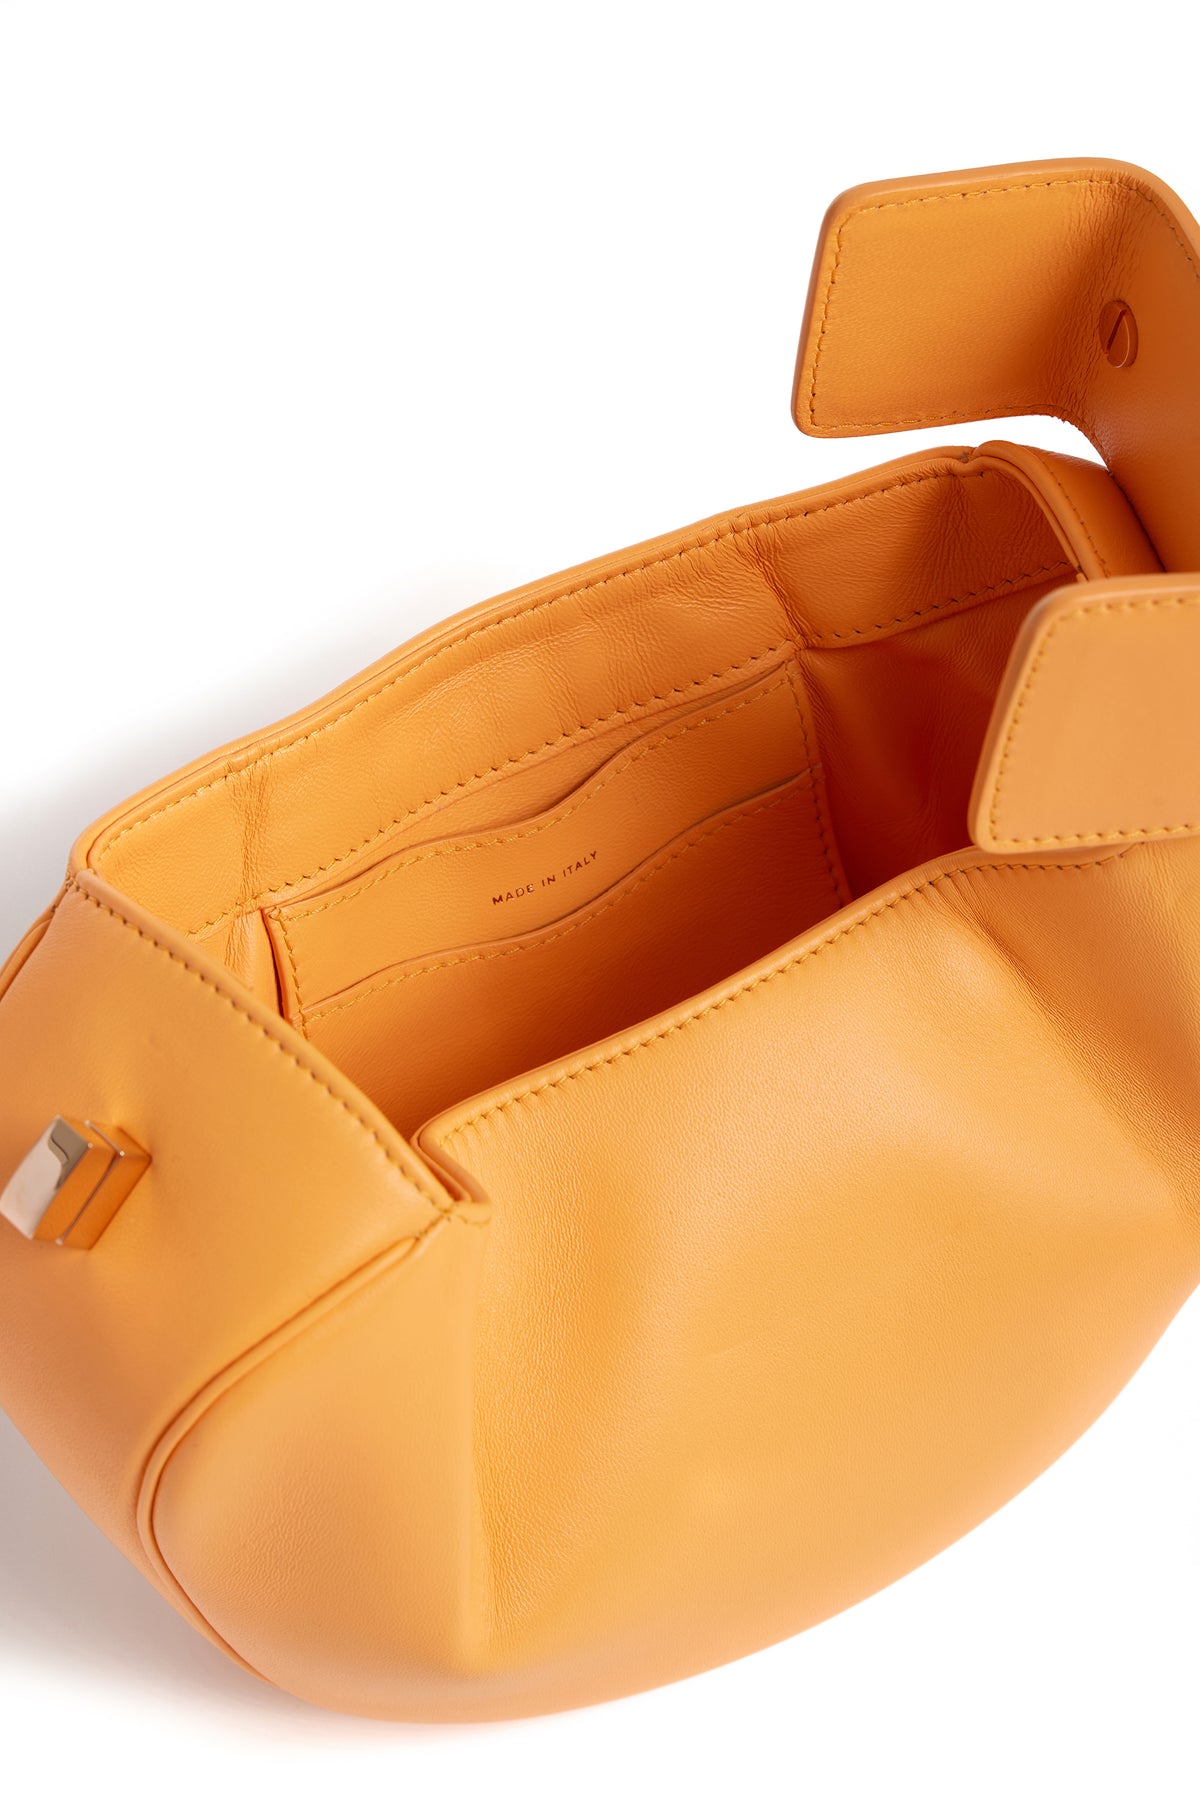 Demi Bag in Fluorescent Orange Nappa Leather